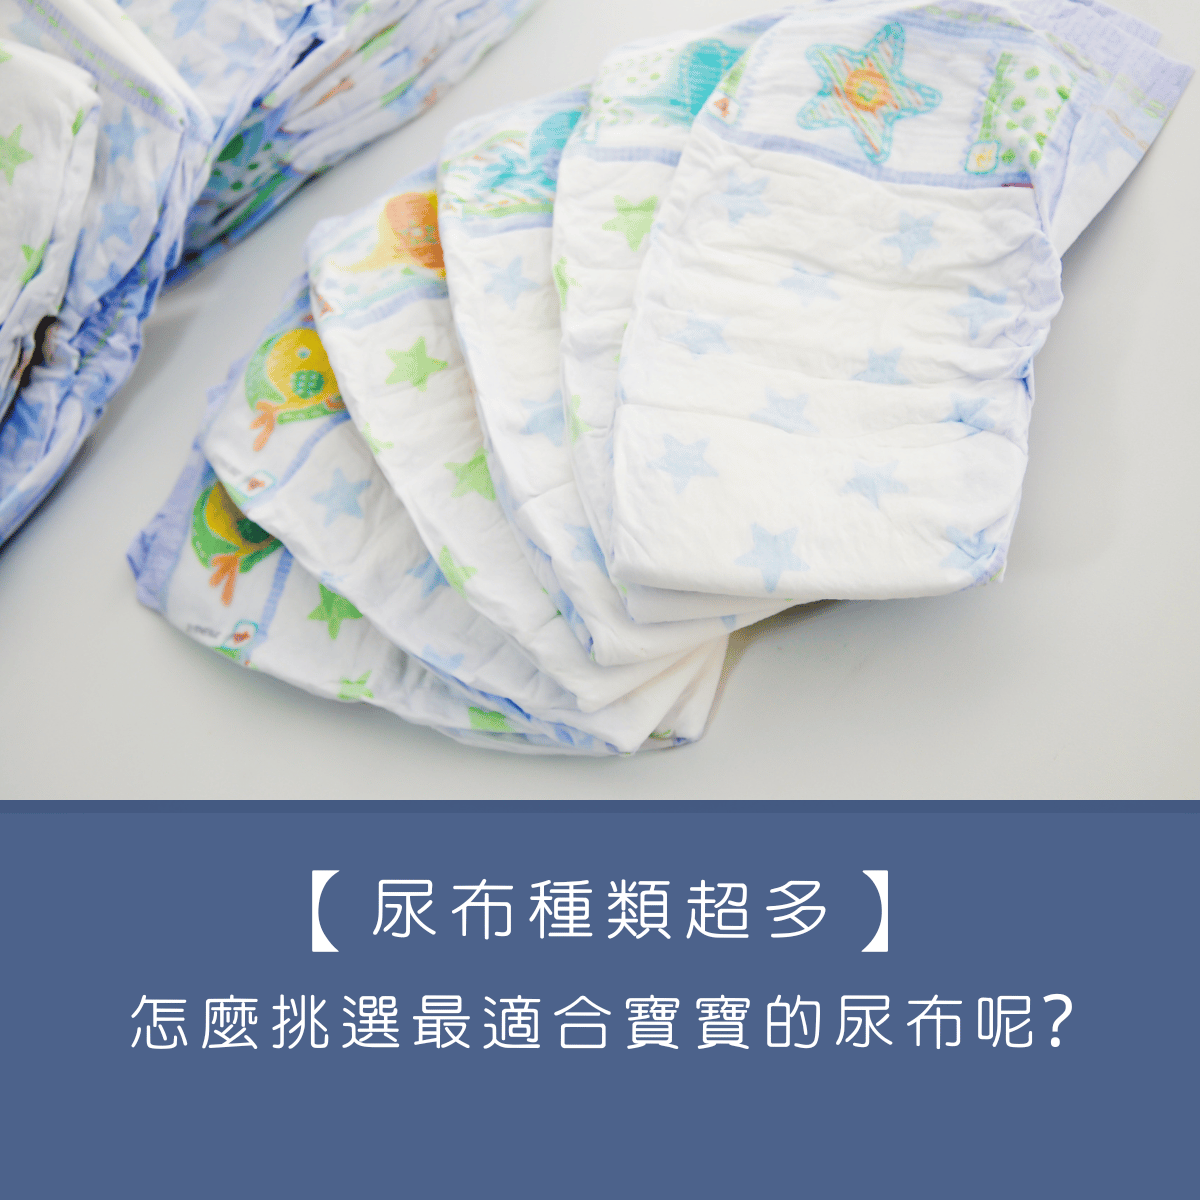 【尿布種類超多】怎麼挑選最適合寶寶的尿布呢?